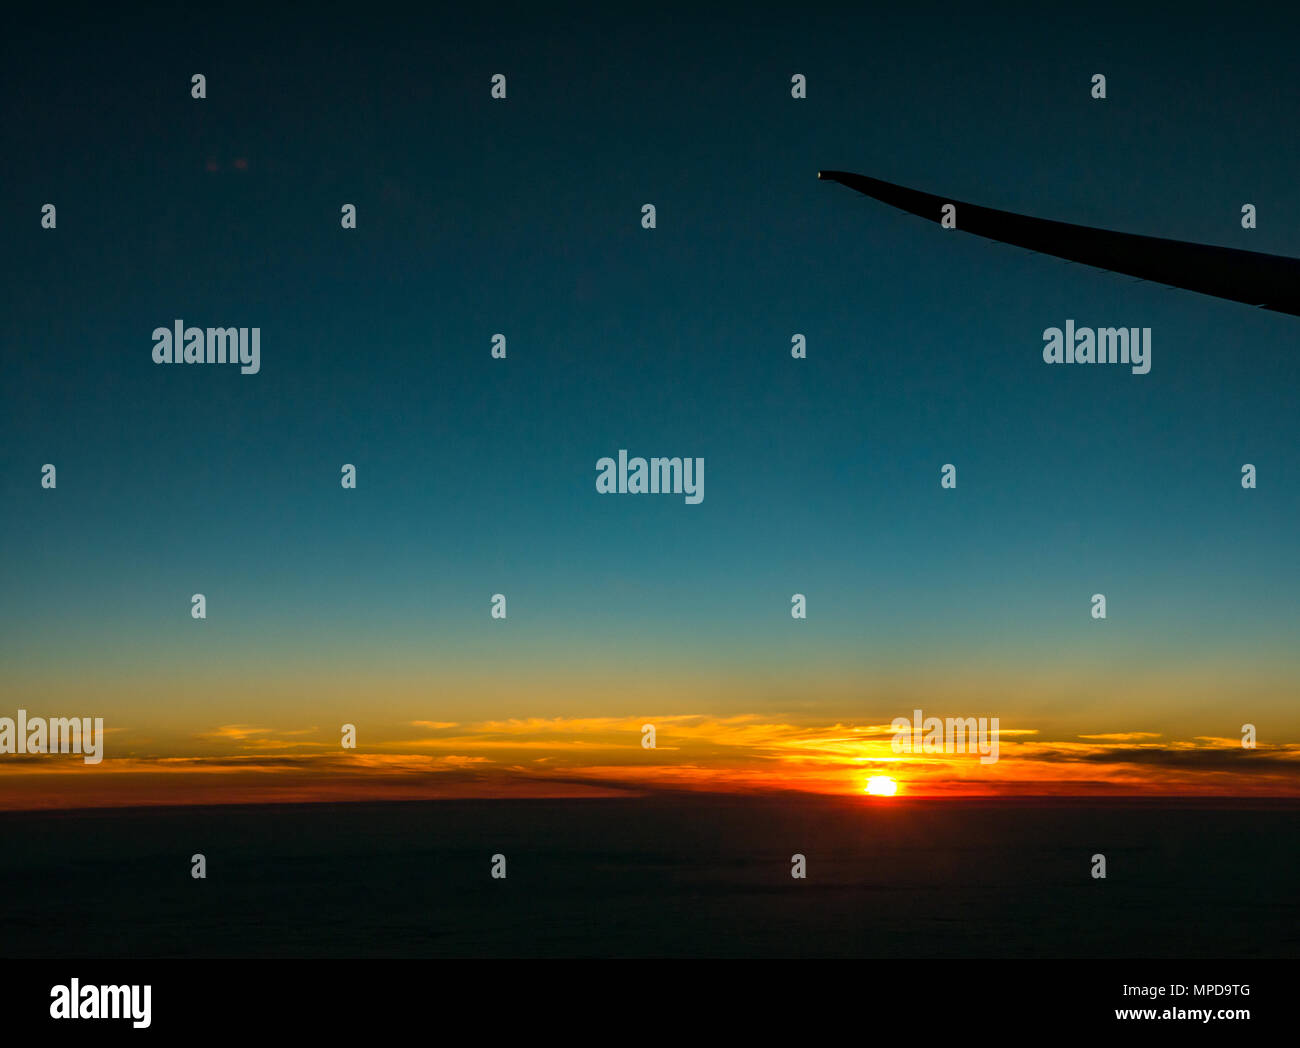 Coucher du soleil orange avec ciel bleu clair et un faible horizon, prises à partir de la fenêtre de l'avion, à l'extrémité de l'aile d'avion silhouette, décoller de Heathro, London, UK Banque D'Images